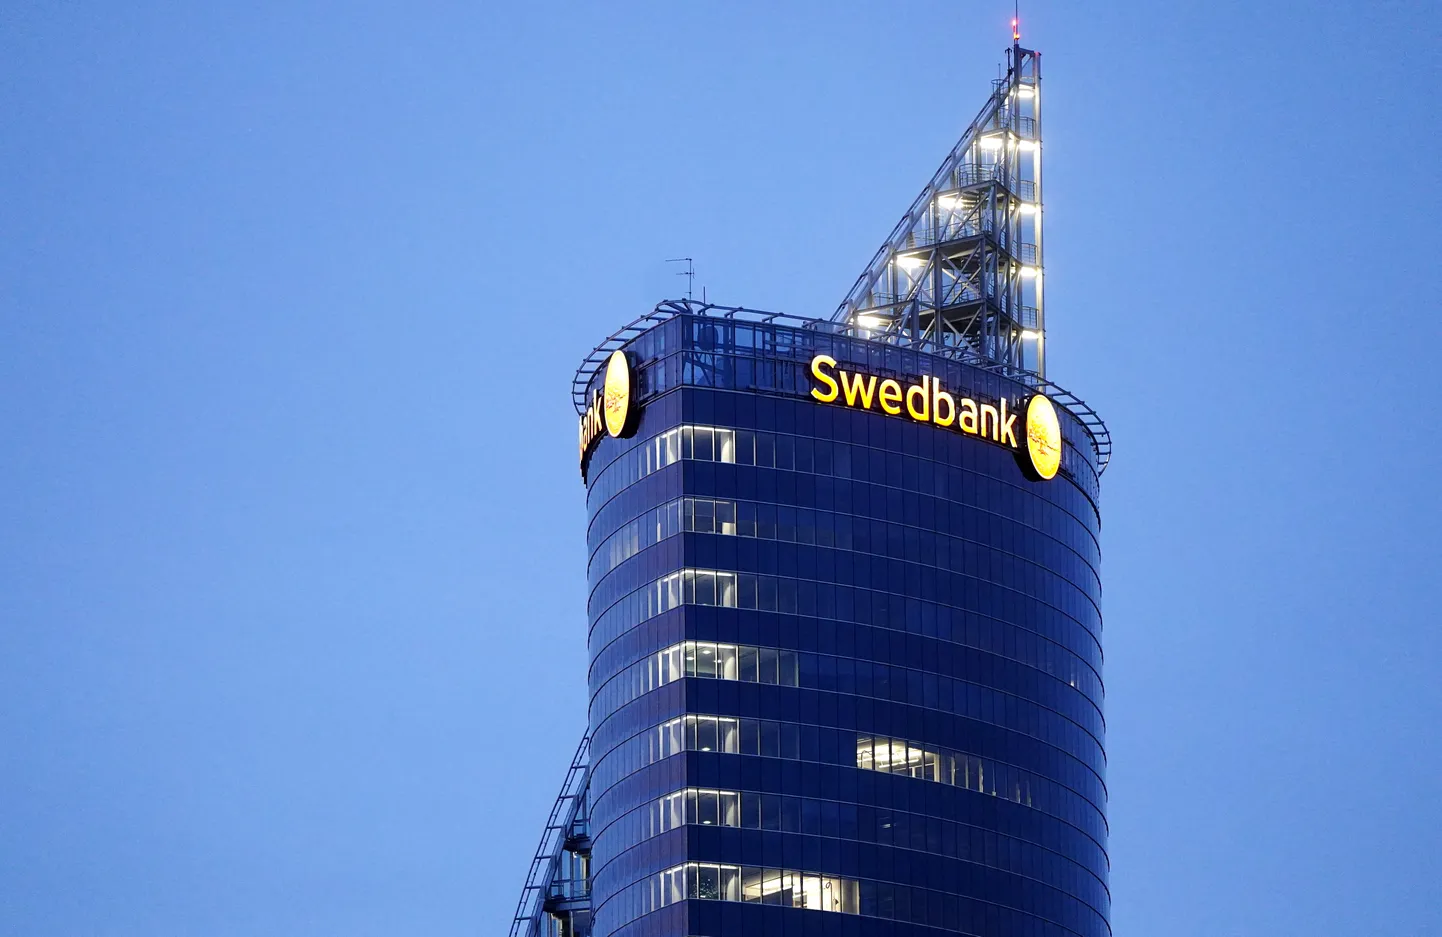 "Swedbank" administratīvā ēkā.